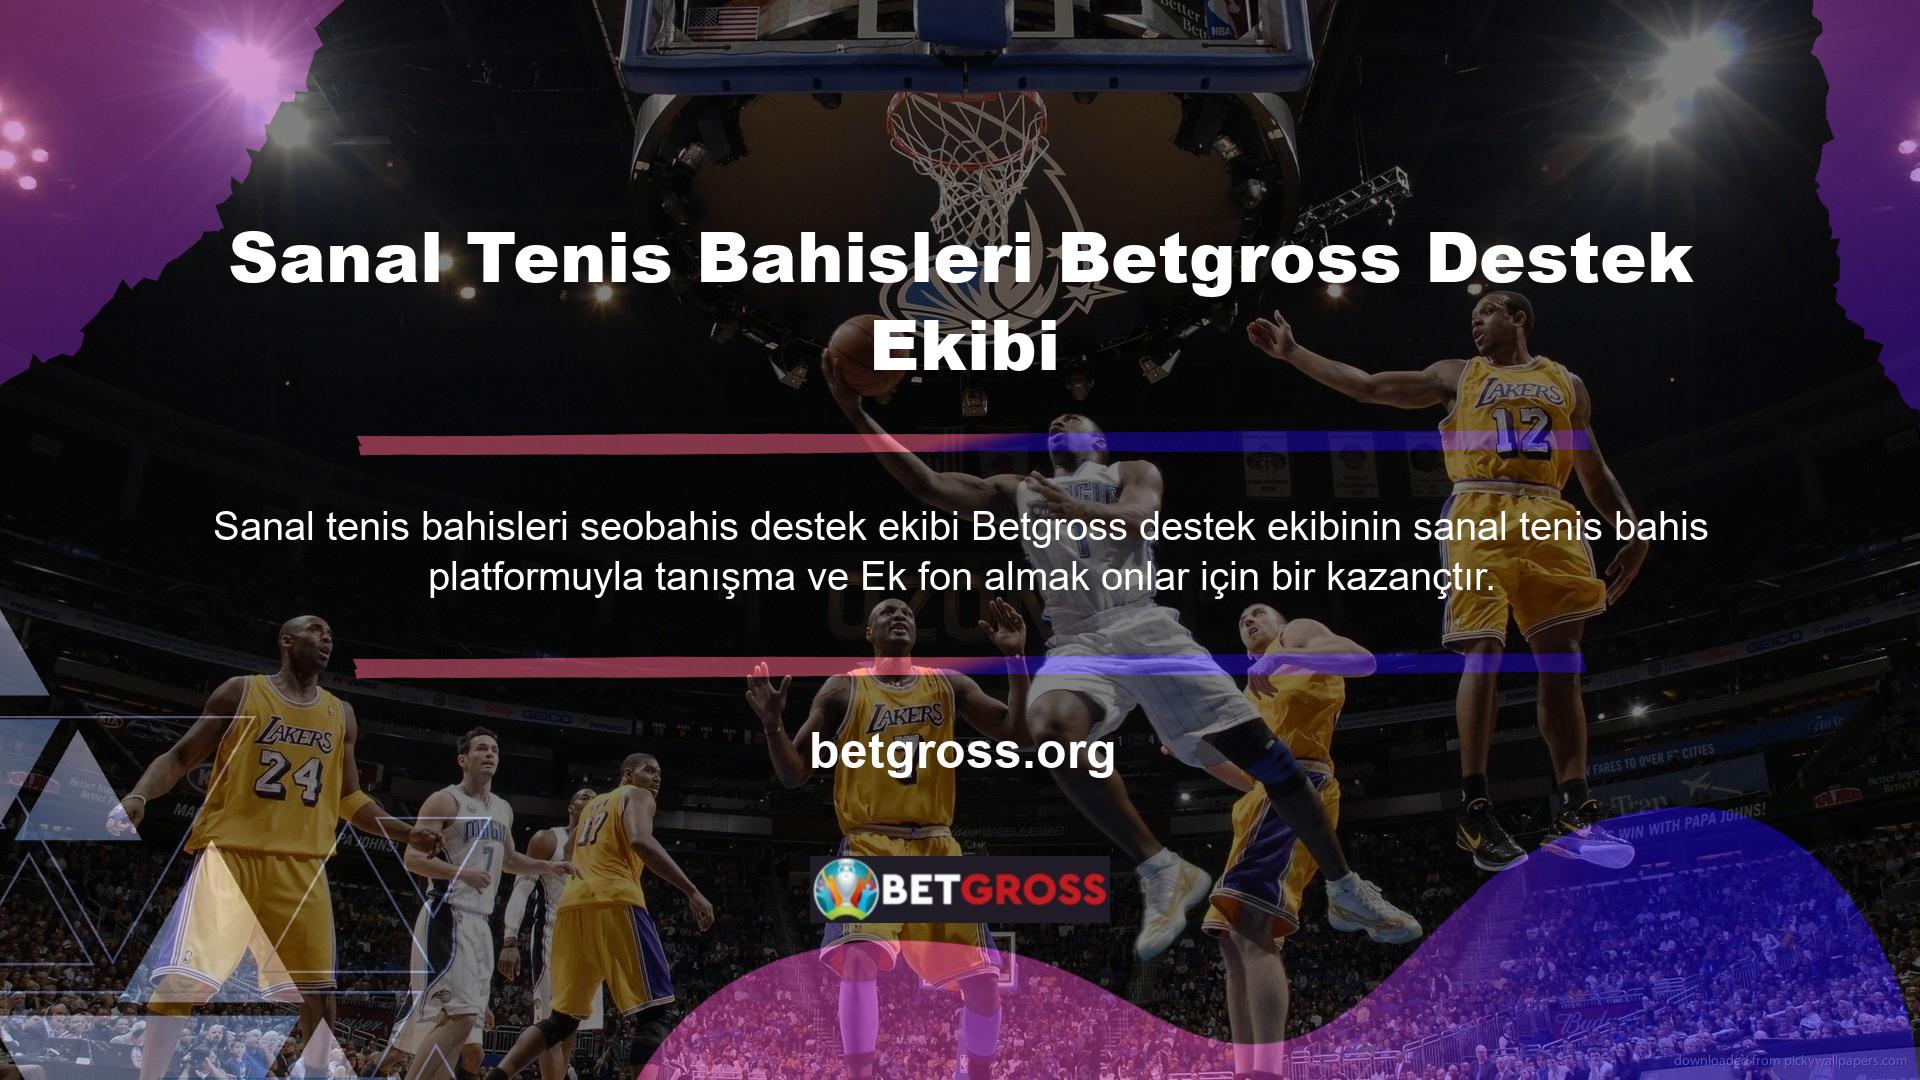 Ayrıca Betgross taraftar destek ekibi profesyonel düzeyde olup, oyuncularla ilgili tüm sorunlar ortaya çıkana kadar yayında kalmalarını sağlamaktadır